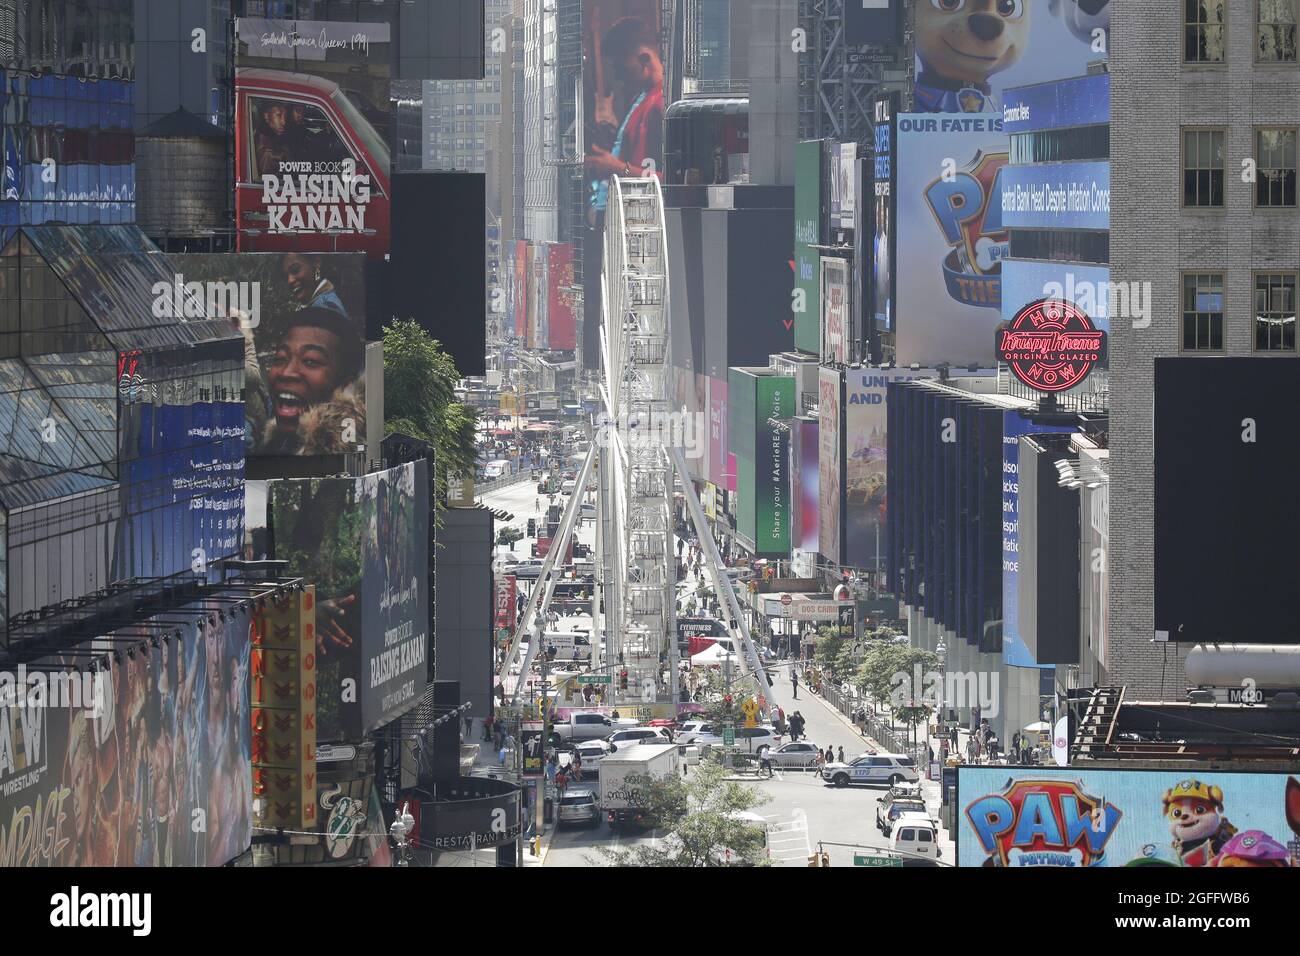 New York, États-Unis. 25 août 2021. Une grande roue à durée limitée ouvre sur Times Square, offrant aux touristes et aux résidents une nouvelle vue sur la ville de New York le mercredi 25 août 2021. Le parcours de 110 mètres de haut est en service du 25 août au 12 septembre. Photo de John Angelillo/UPI crédit: UPI/Alay Live News Banque D'Images